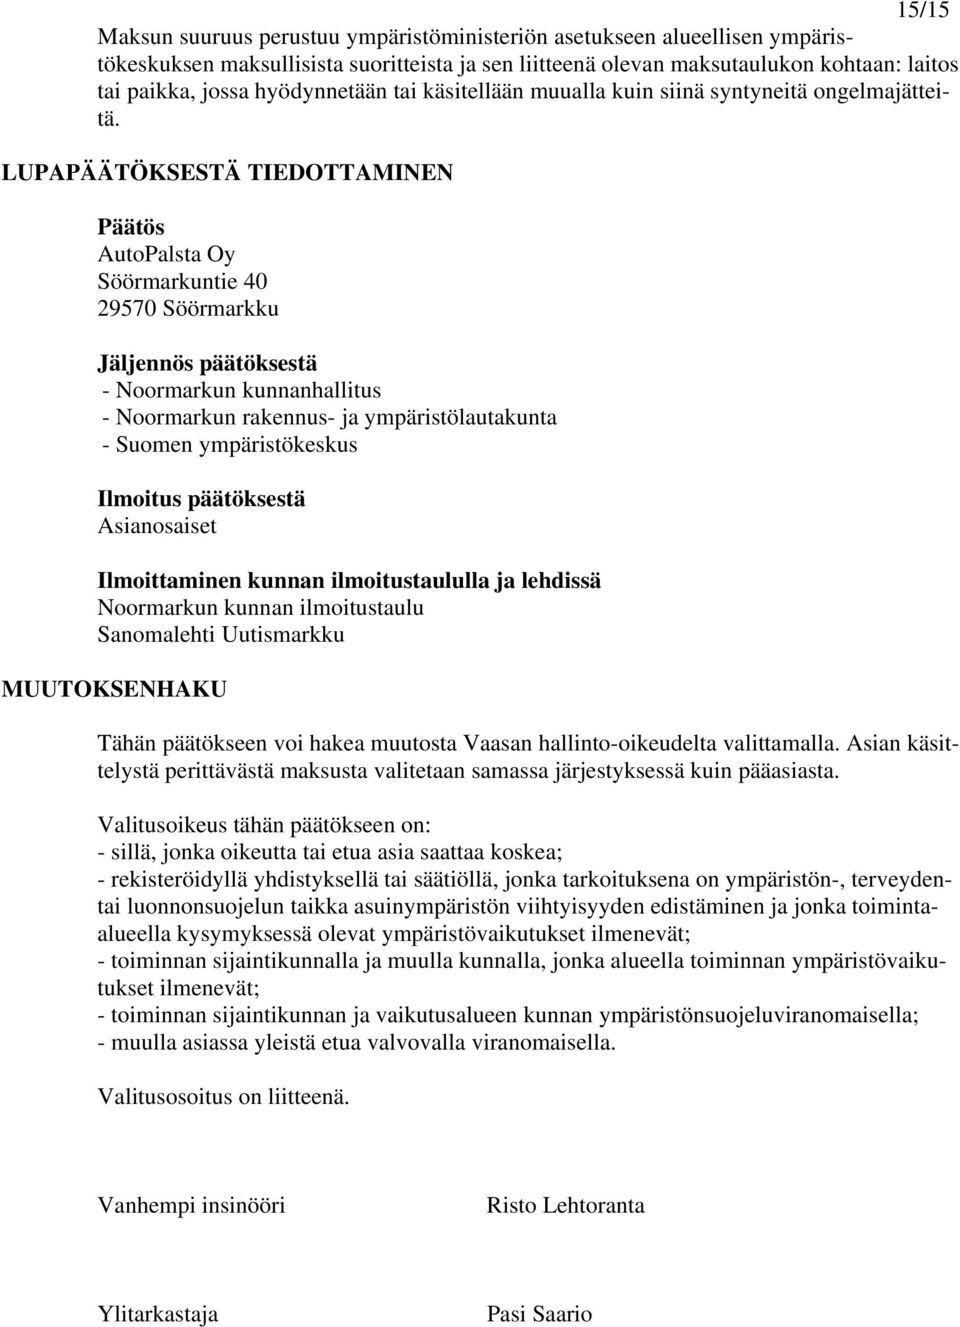 LUPAPÄÄTÖKSESTÄ TIEDOTTAMINEN Päätös AutoPalsta Oy Söörmarkuntie 40 29570 Söörmarkku Jäljennös päätöksestä - Noormarkun kunnanhallitus - Noormarkun rakennus- ja ympäristölautakunta - Suomen